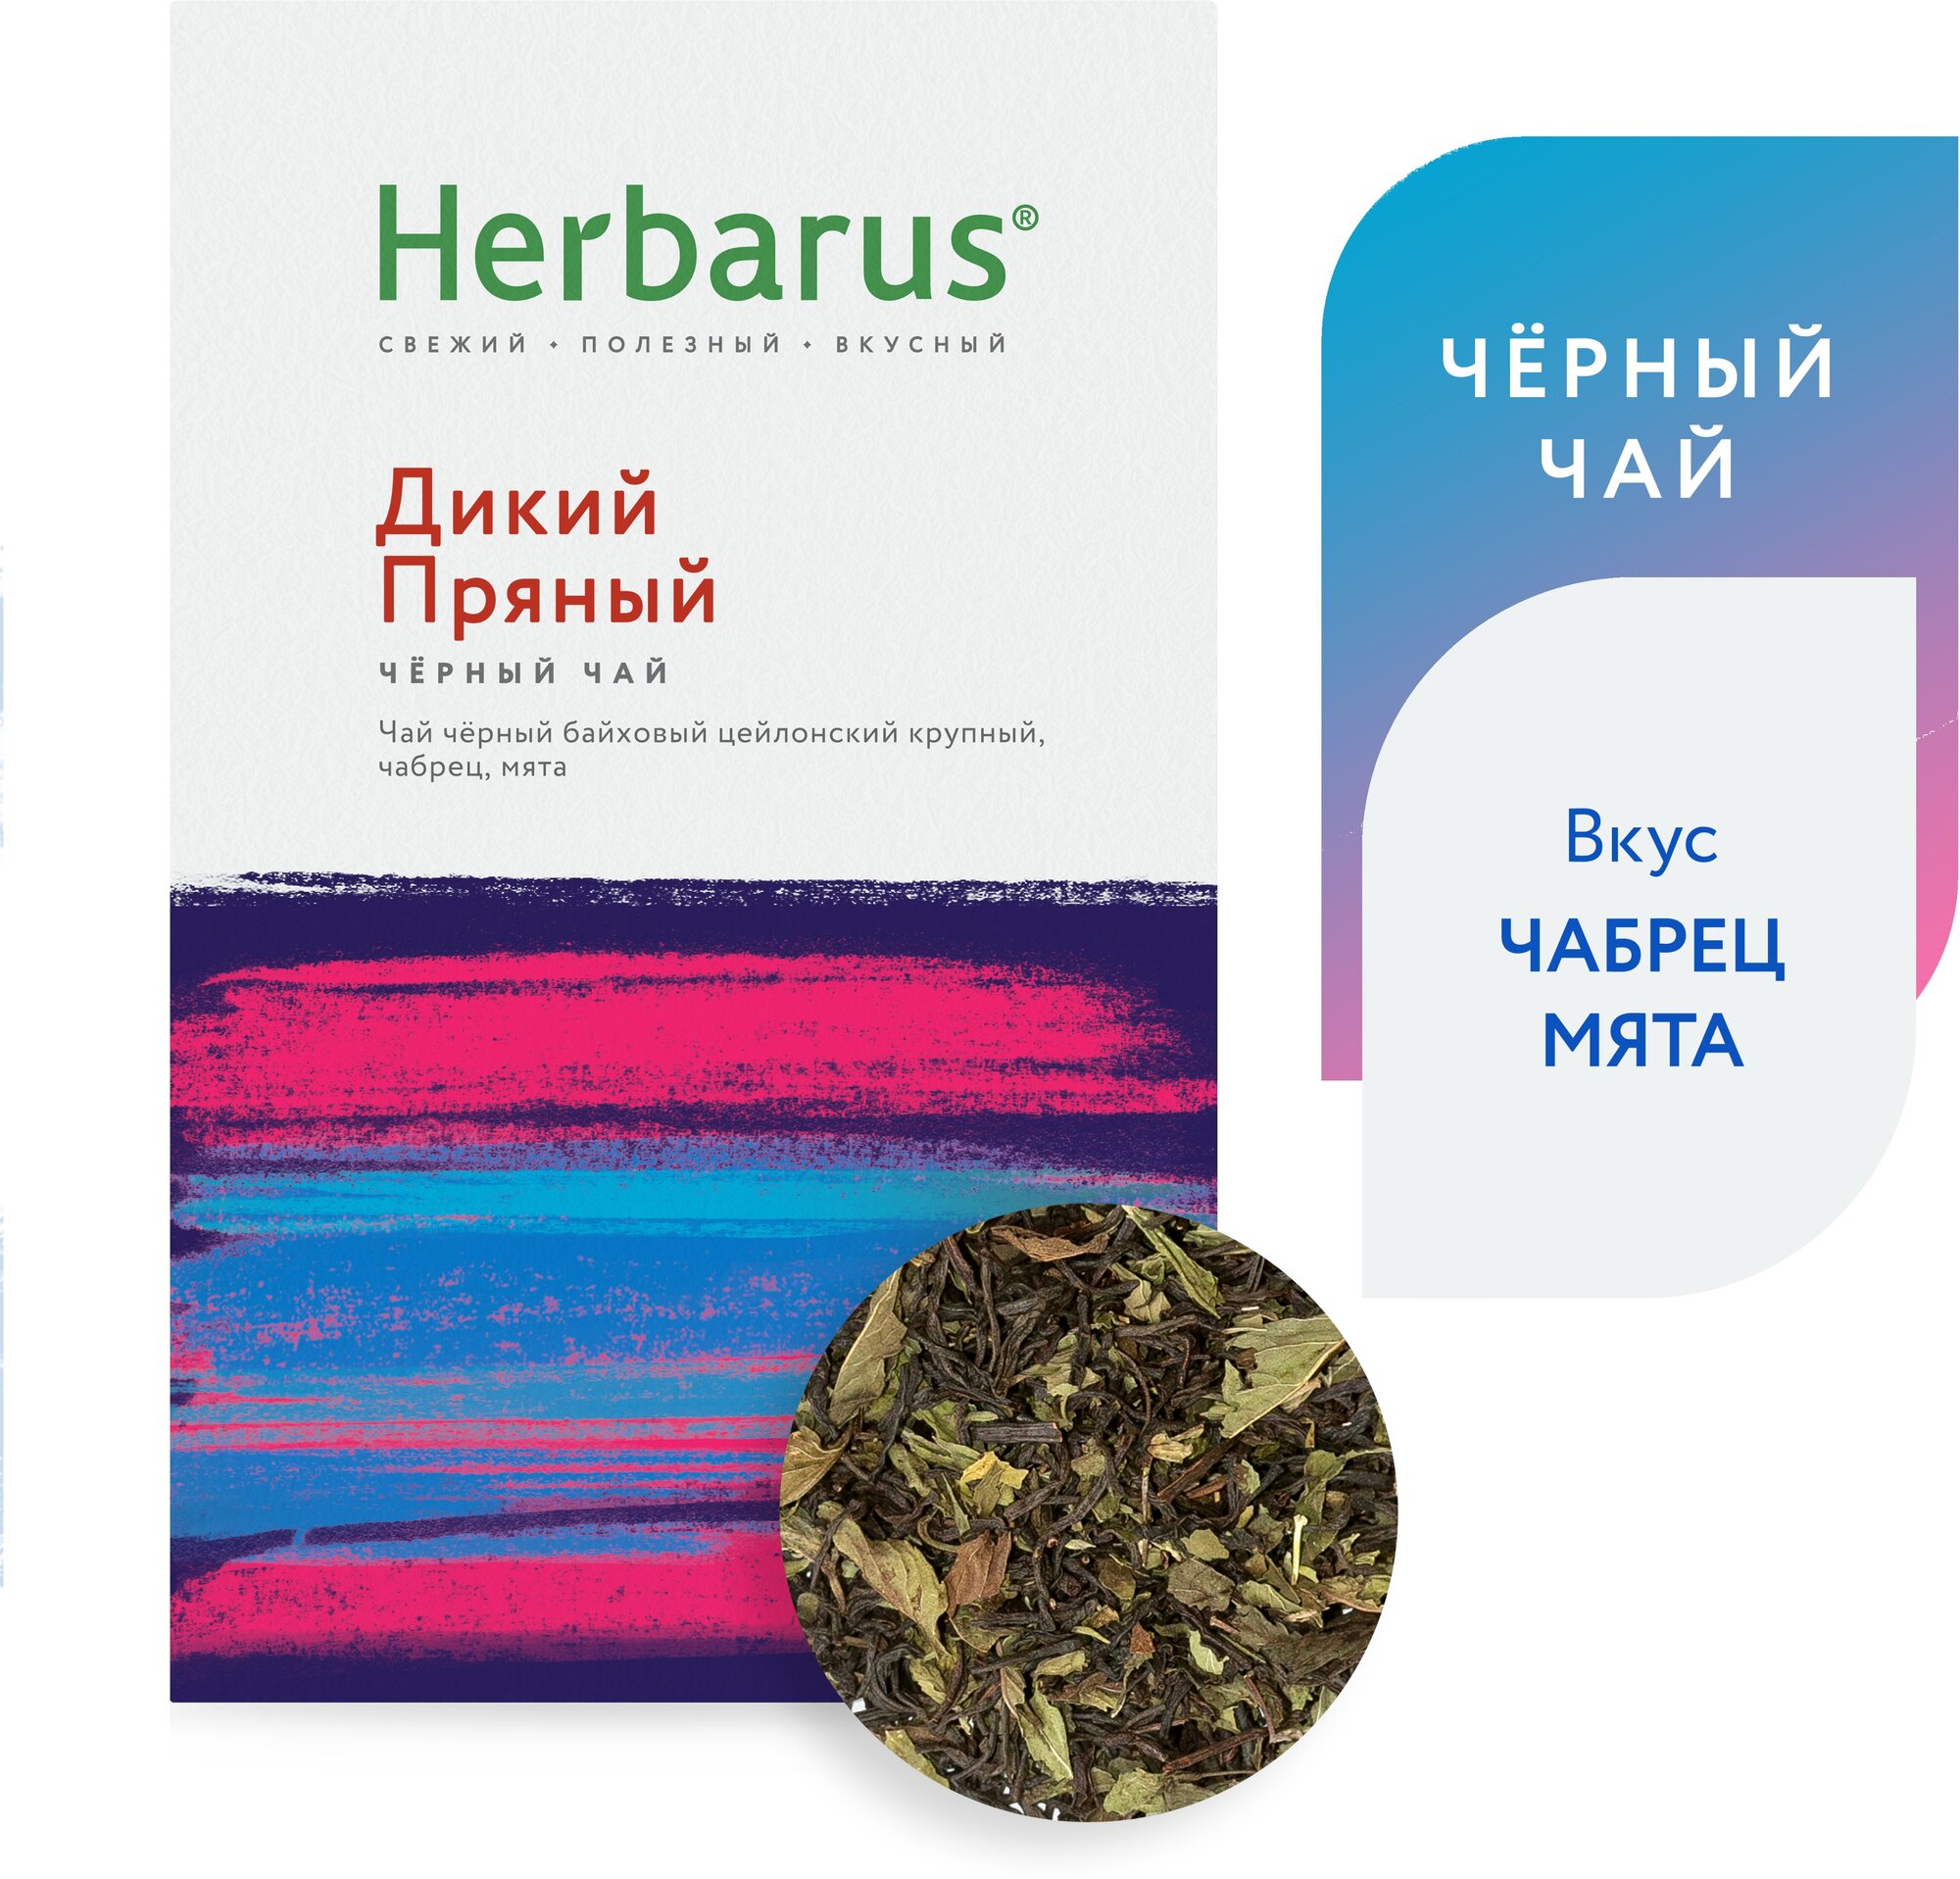 Черный чай с добавками Herbarus "Дикий Пряный", листовой, 75г.